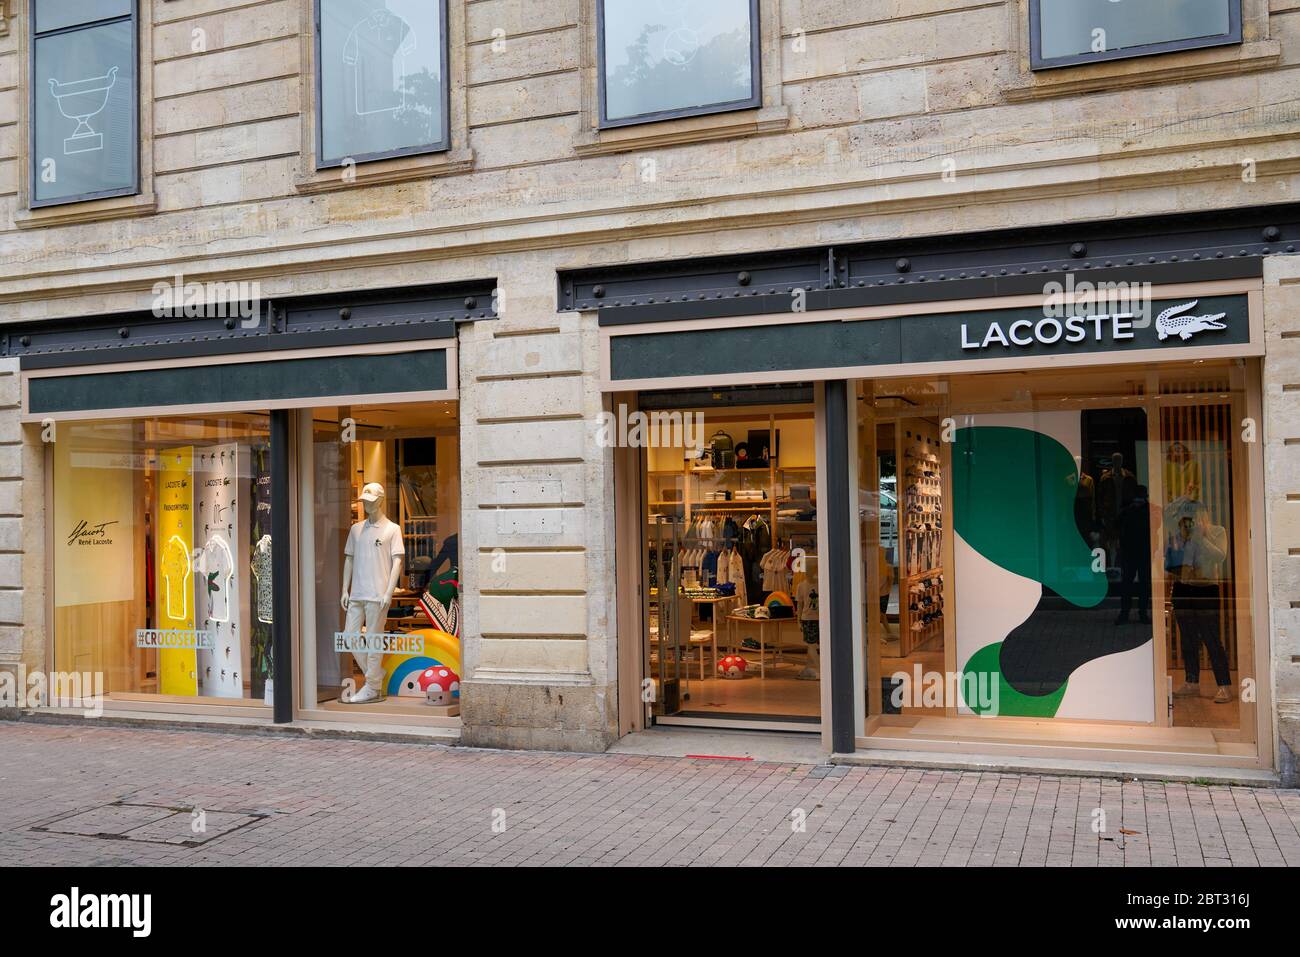 Bordeaux , Aquitaine / France - 05 16 2020 : Lacoste crocodile logo boutique  building shop sign brand on store front Stock Photo - Alamy